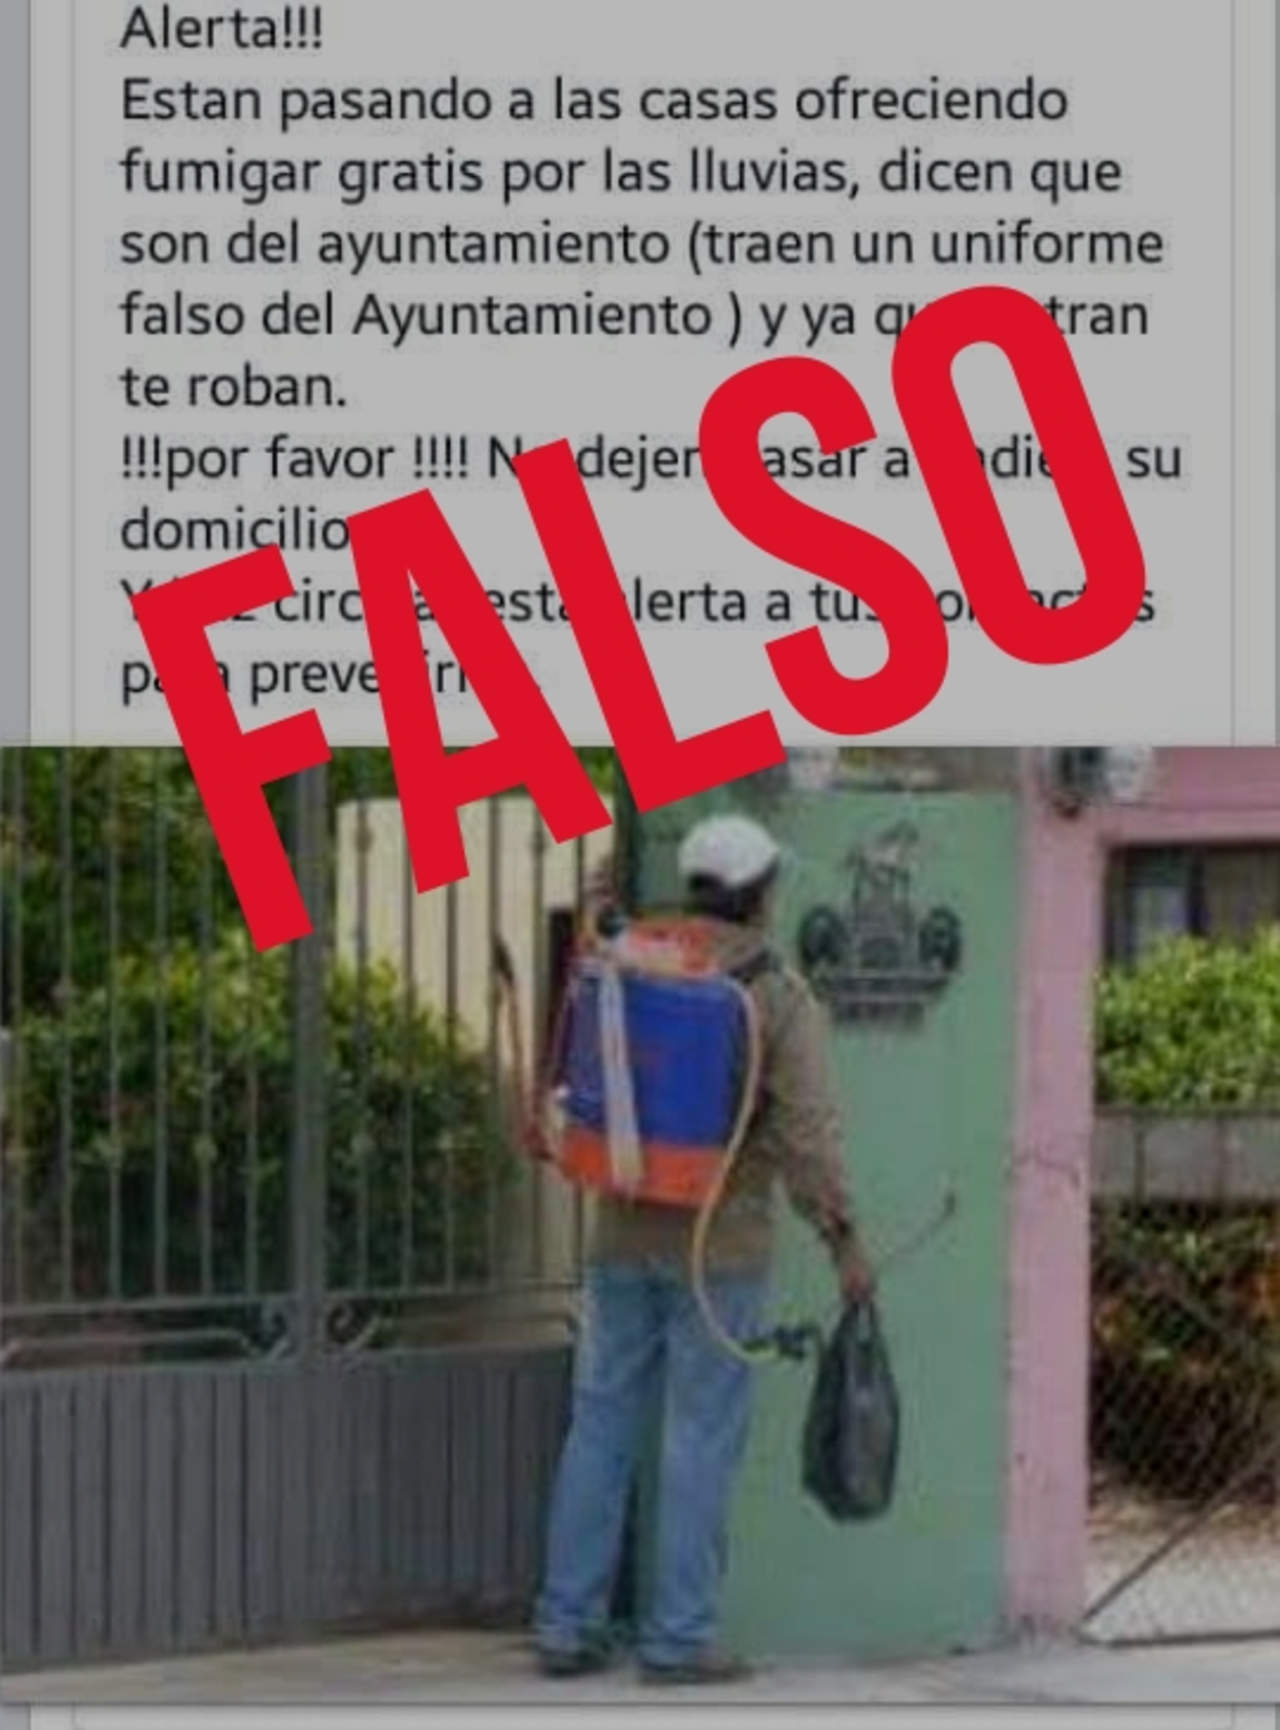 En redes sociales ha circulado la falsa alerta de presuntos fumigadores con uniformes falsos del Ayuntamiento de Torreón que ingresan a los domicilios a robar. (ESPECIAL) 


